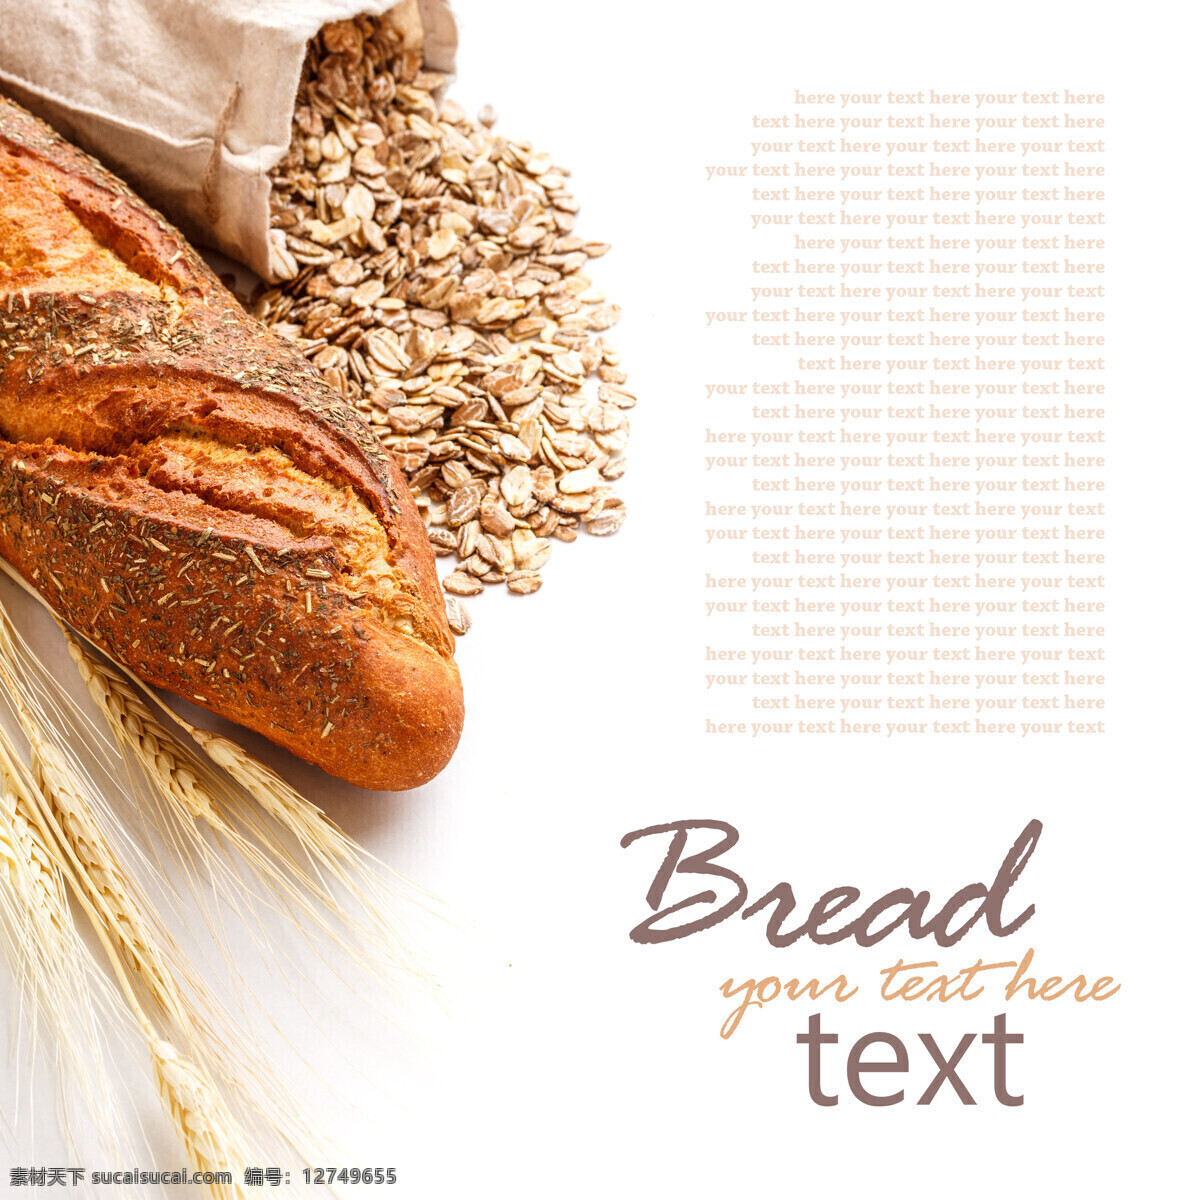 麦麸 法 棍 麦穗 背景 素材图片 法棍 面包 背景素材 外国美食 餐饮美食